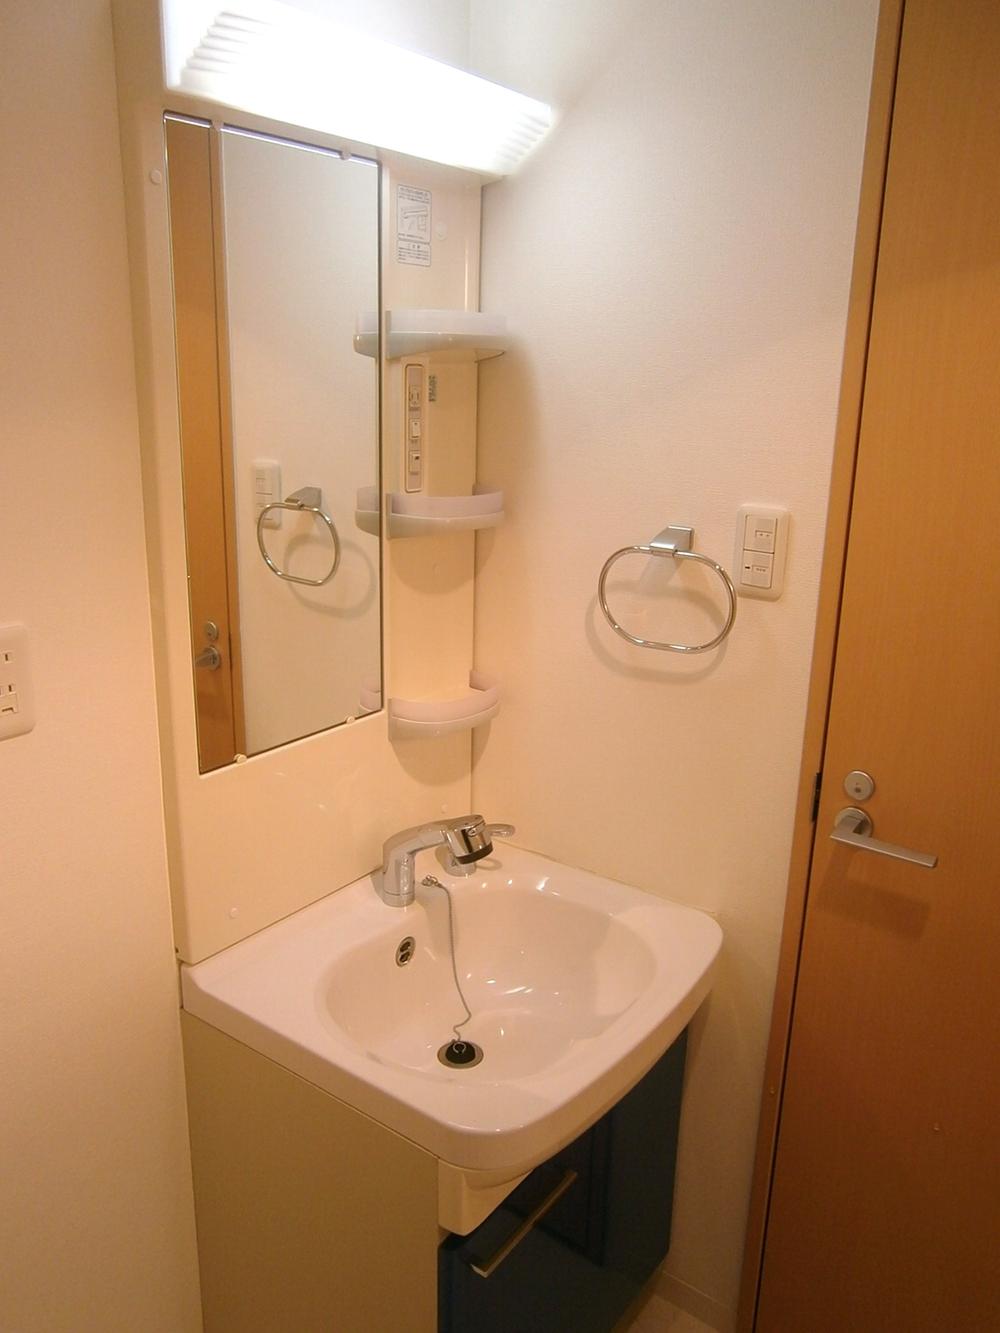 Wash basin, toilet. Indoor (11 May 2012) shooting